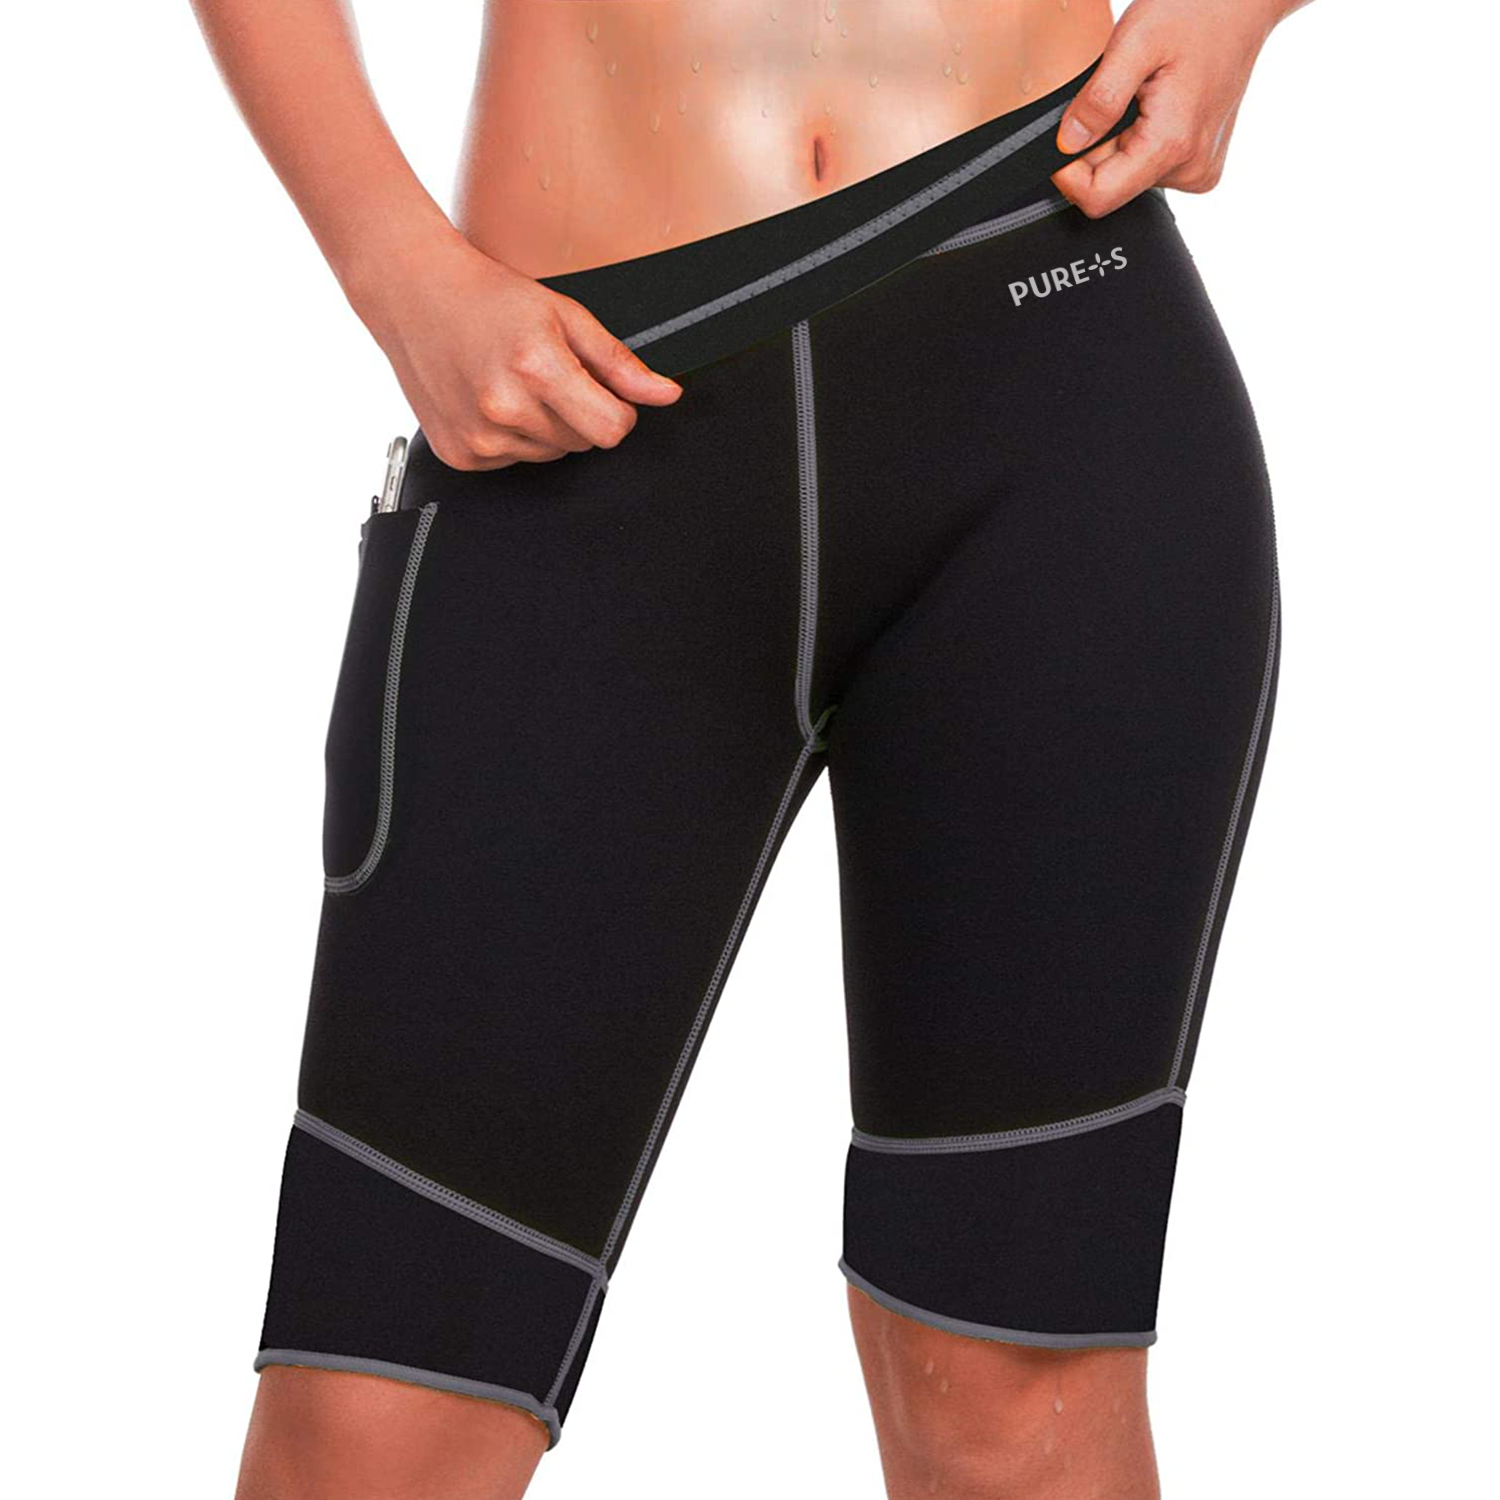 фото Неопреновые шорты для похудения, sauna leggings pure+s, размер xl